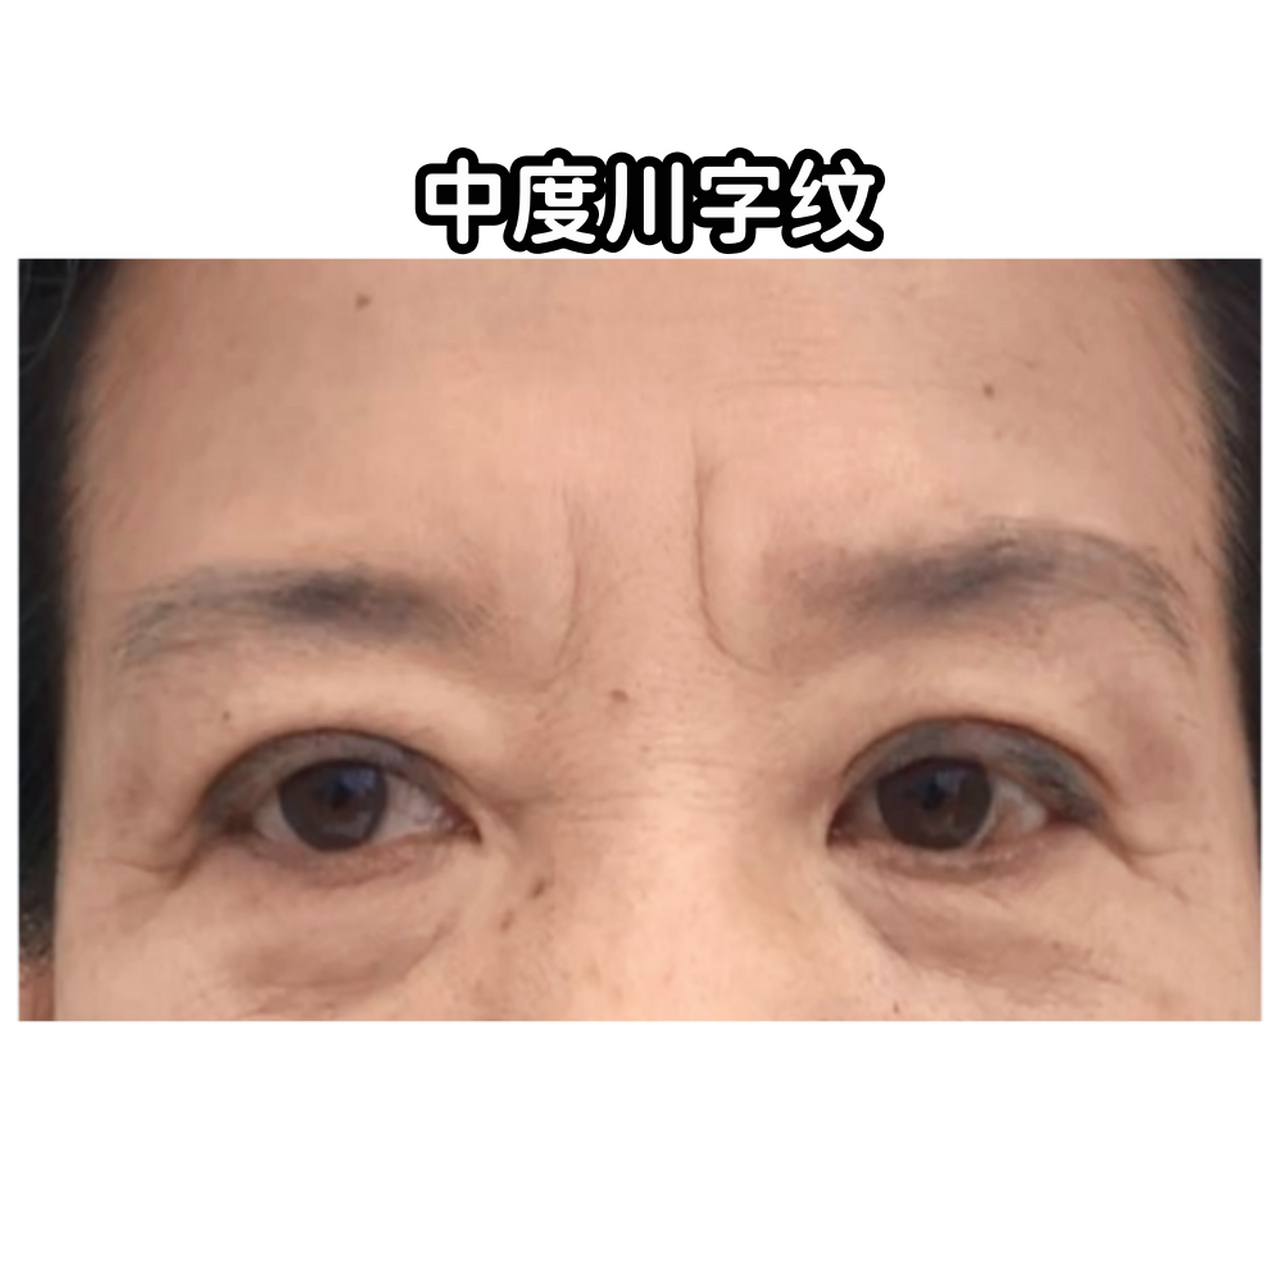 对于轻度,中度的眉间川字纹,采取一些简单有效的方法可以显著改善面部